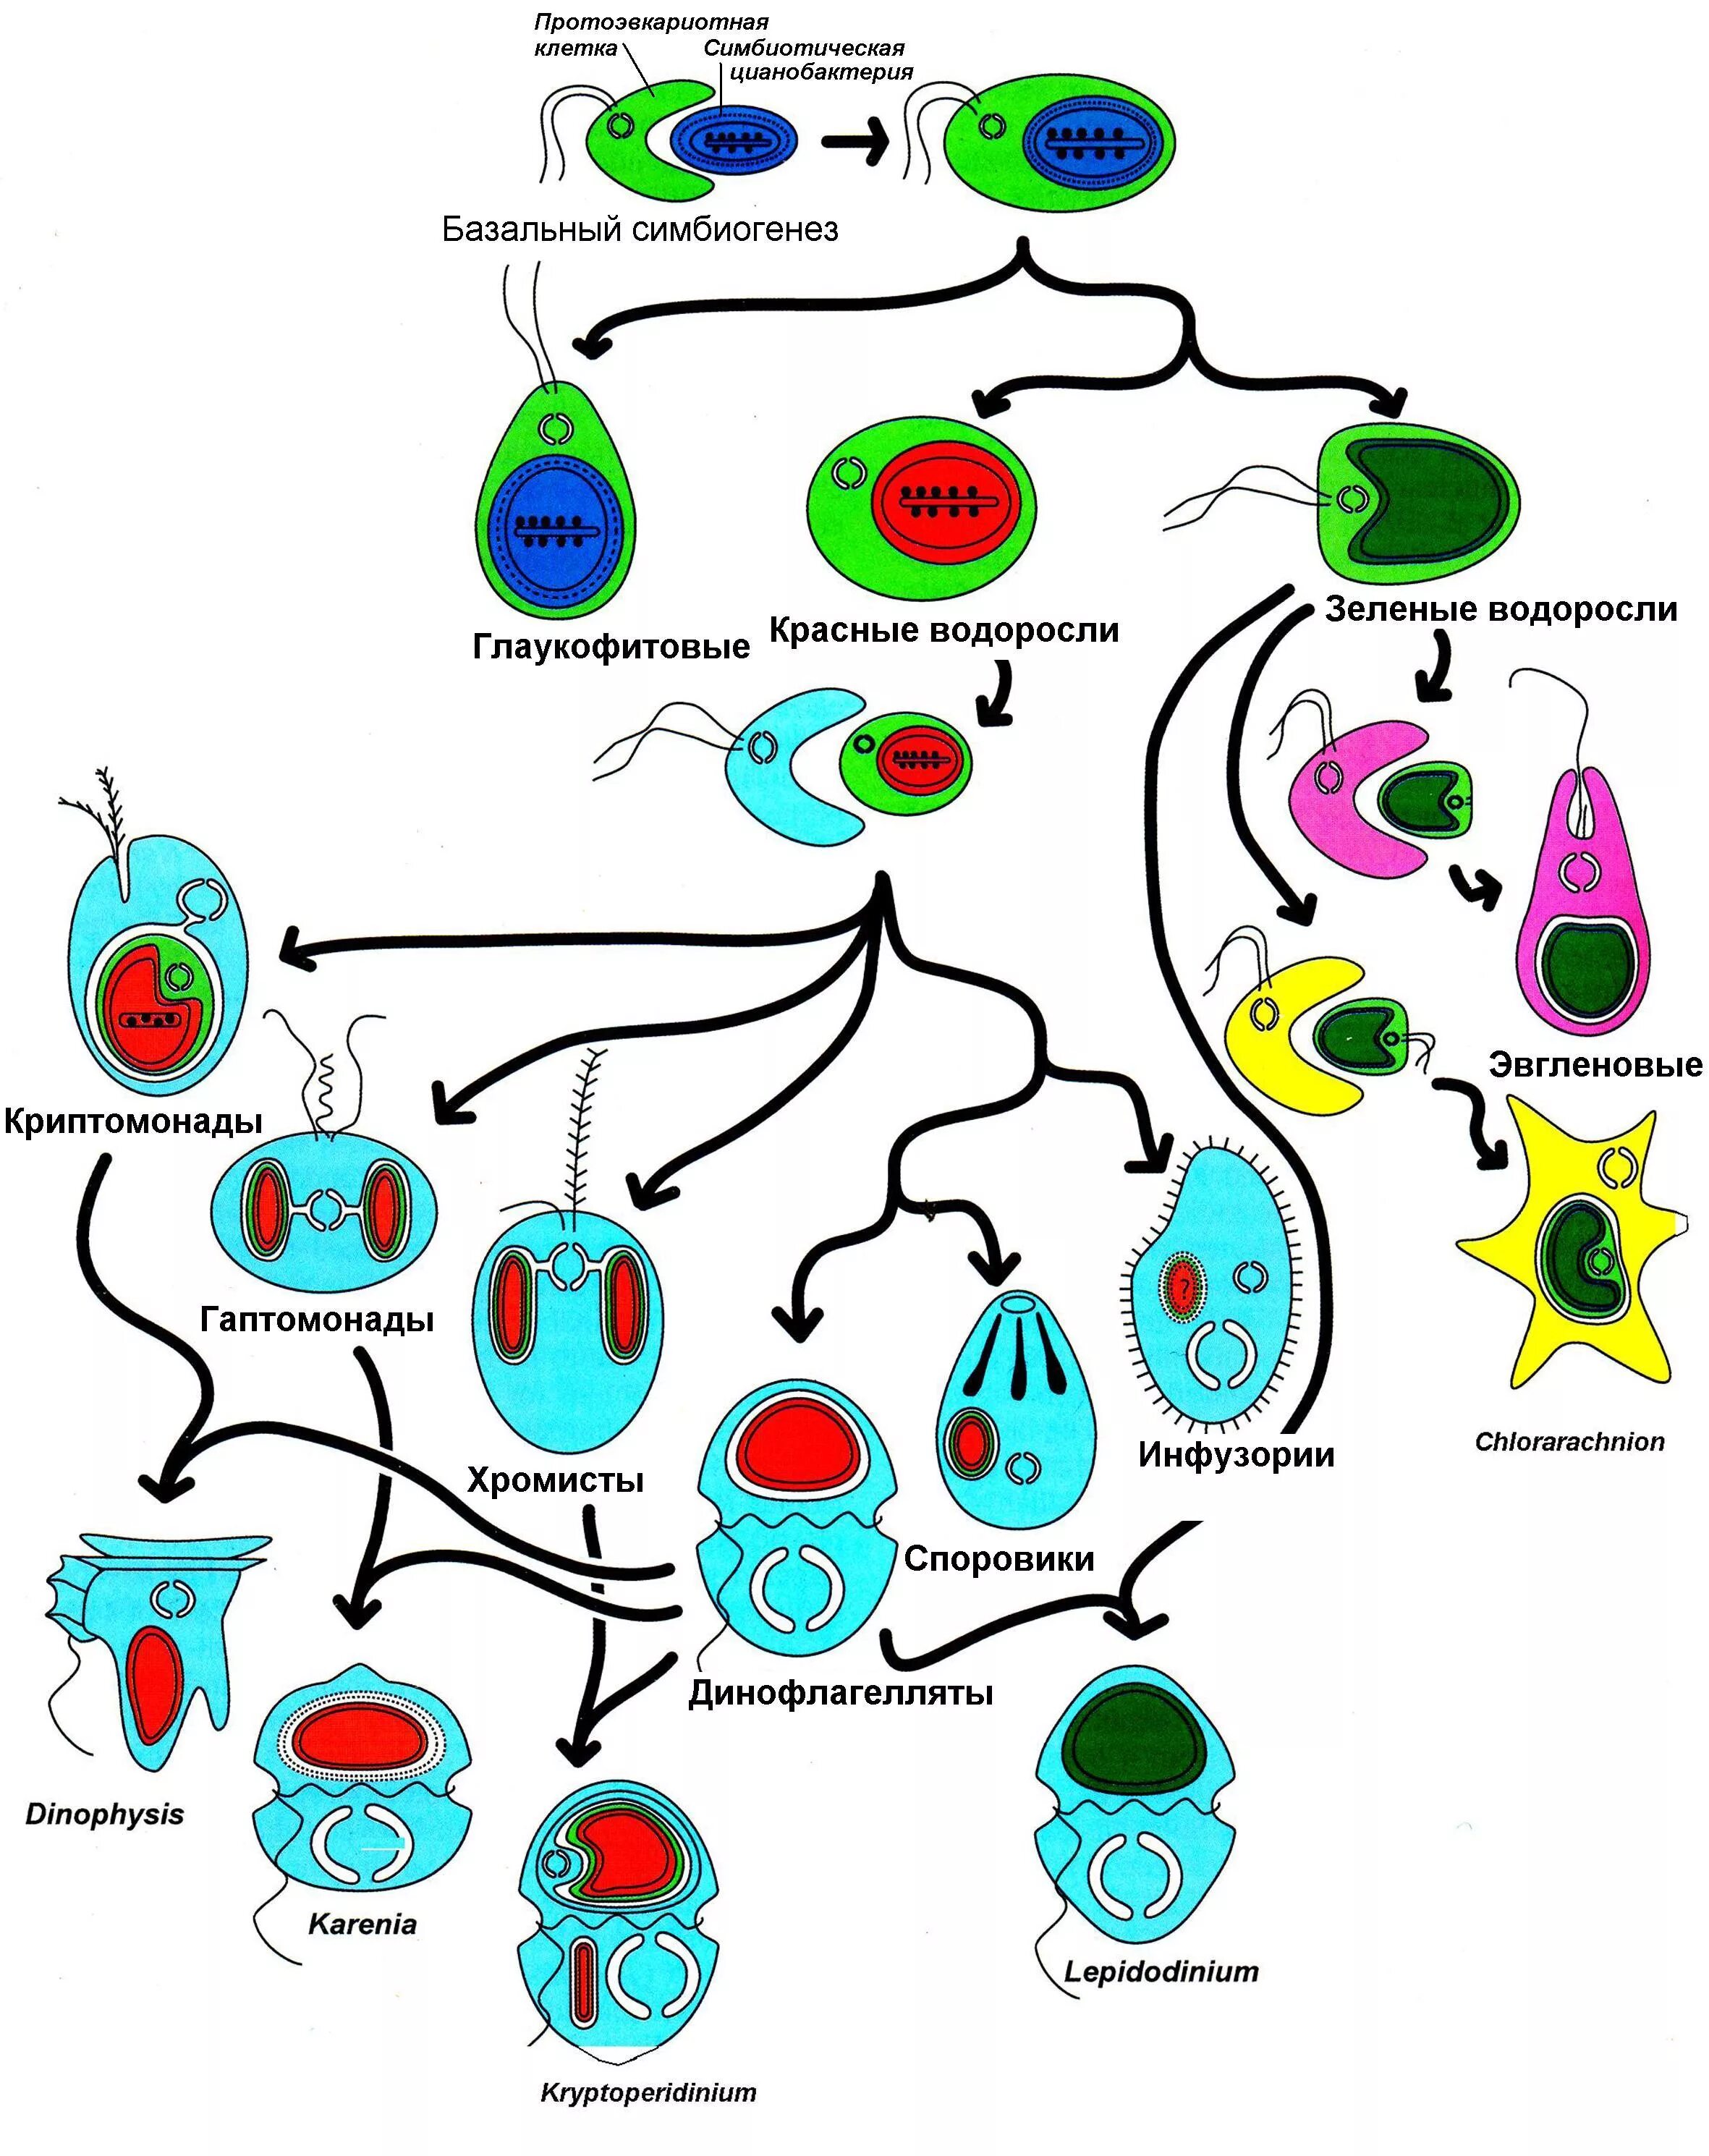 Эволюция первых клеток. Эндосимбиоз. Глаукофитовые водоросли строение. Вторичный эндосимбиоз. Эволюция на клеточном уровне.